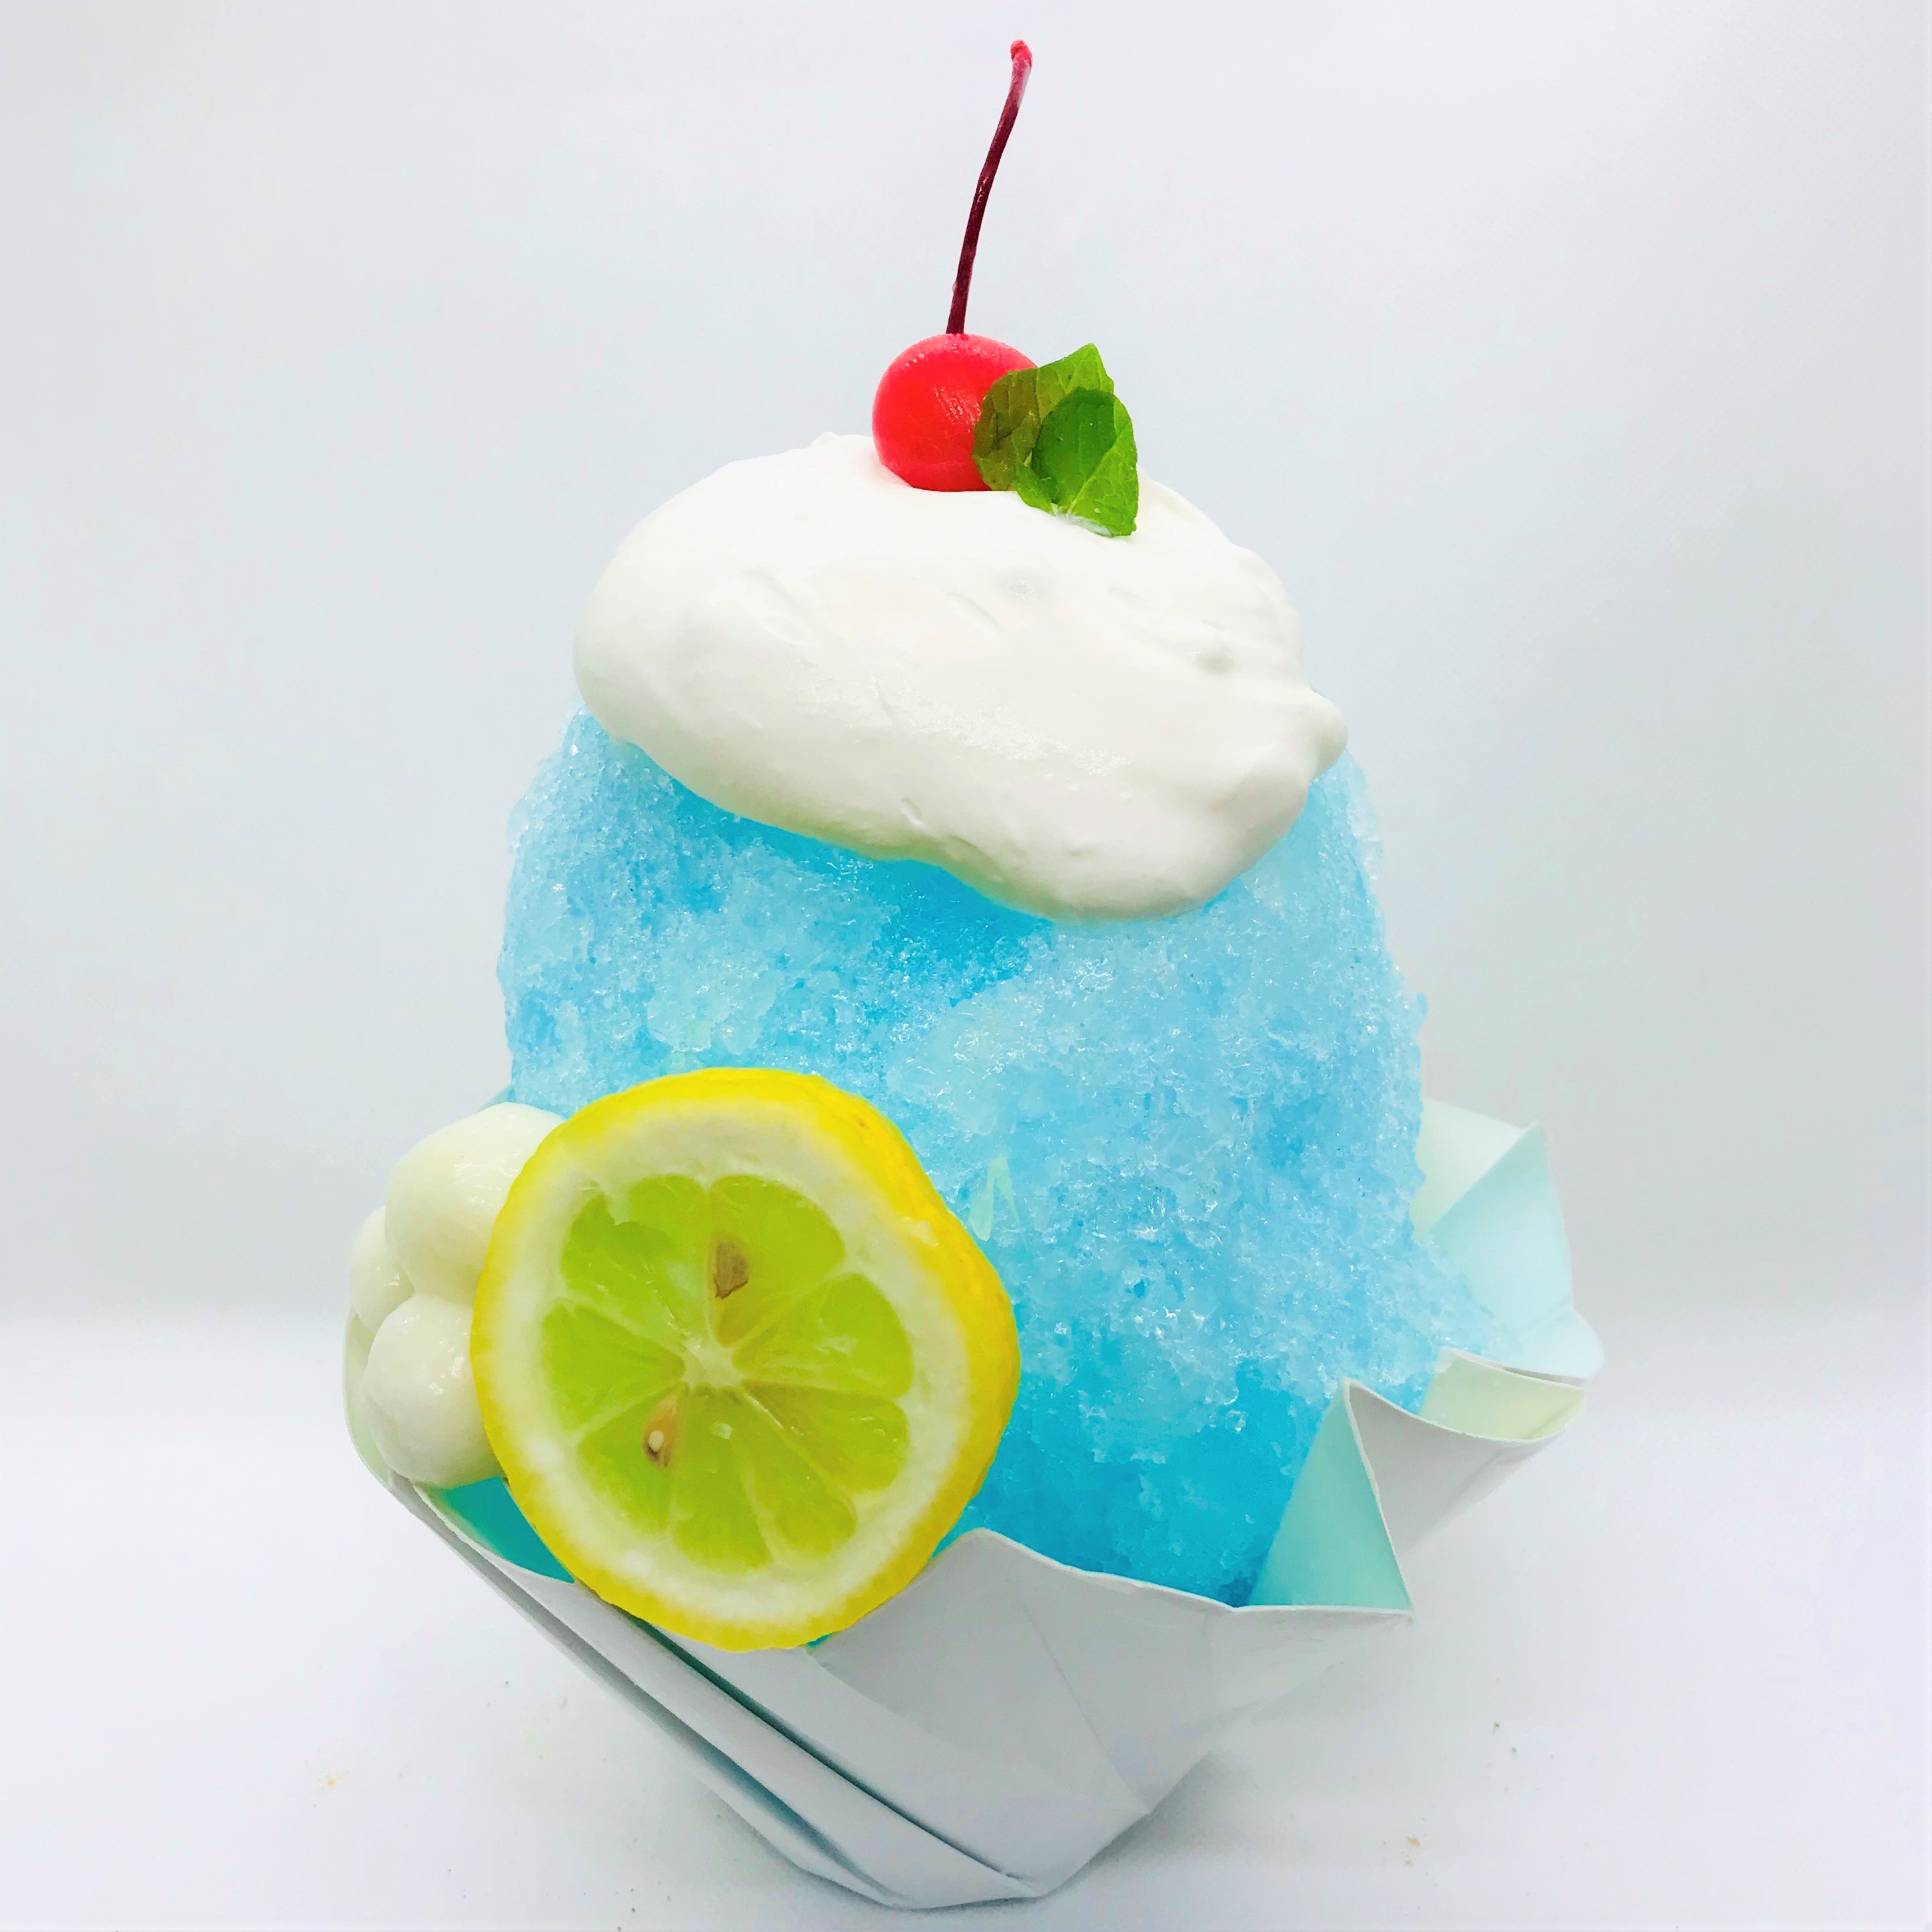 鞆の浦の海と夏空をイメージした青色のかき氷「瀬戸内レモネード」が夏季限定で販売開始のサブ画像1